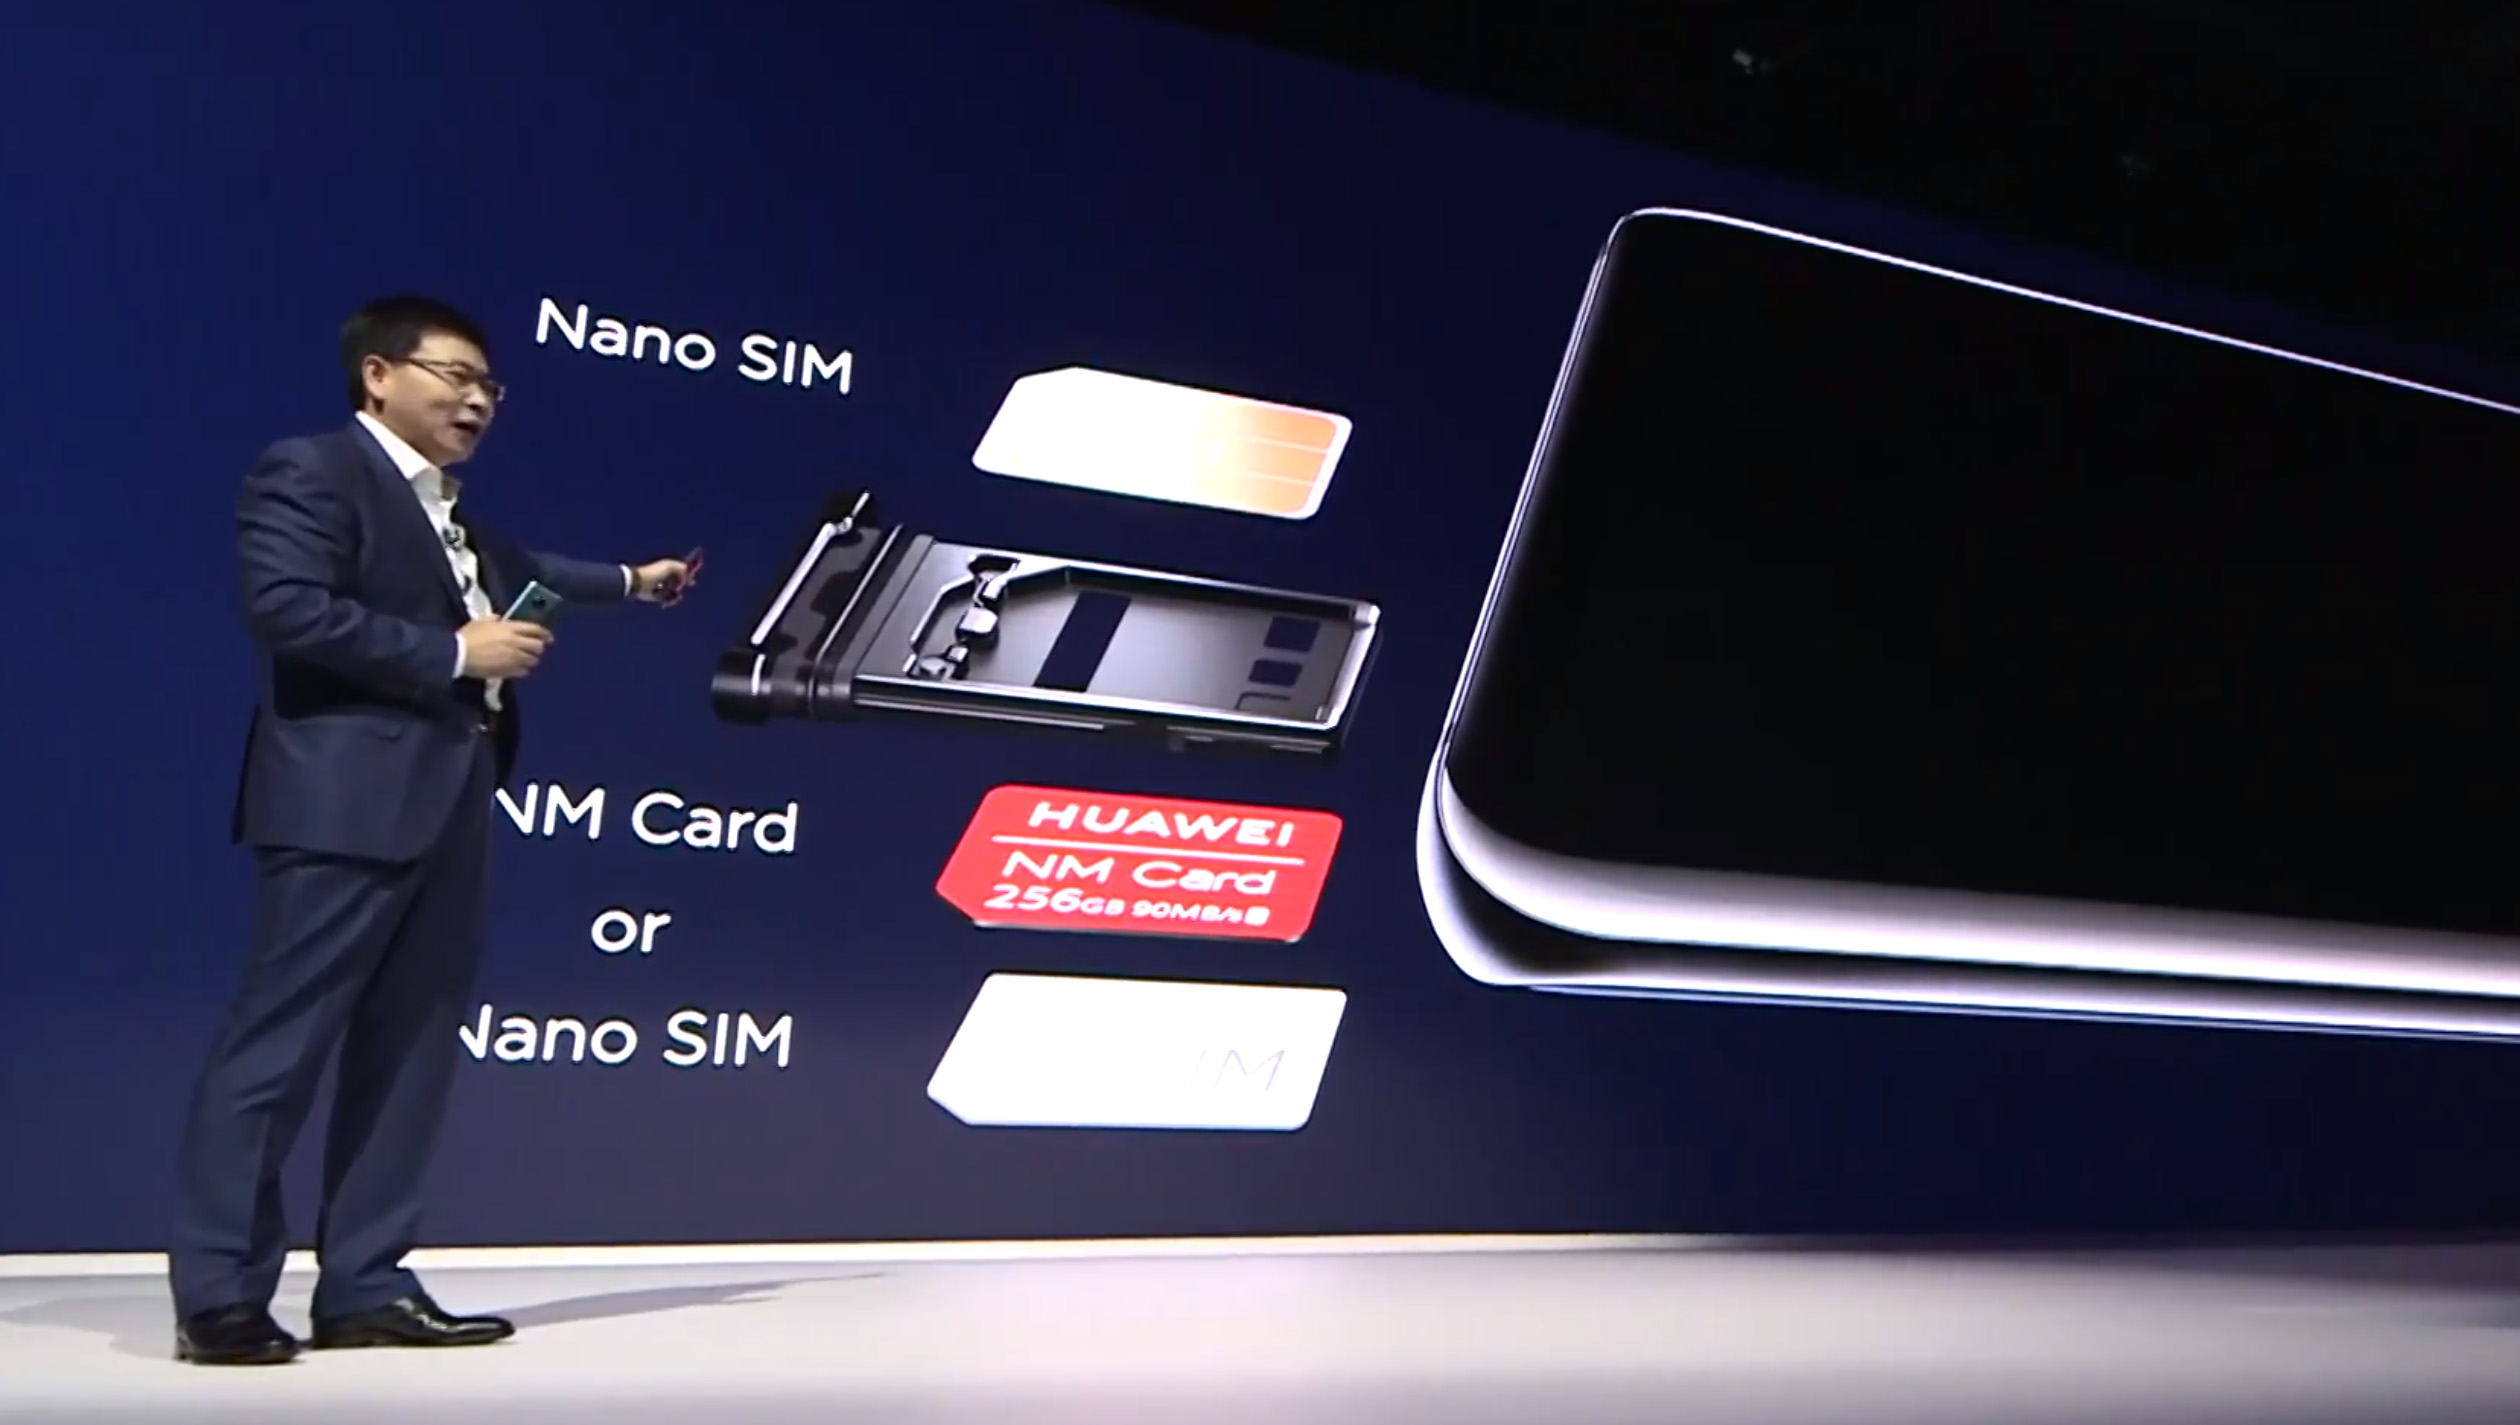 Huawei NM Card 90MB/s Nano Memory Card for Huawei Mate 20 / Mate